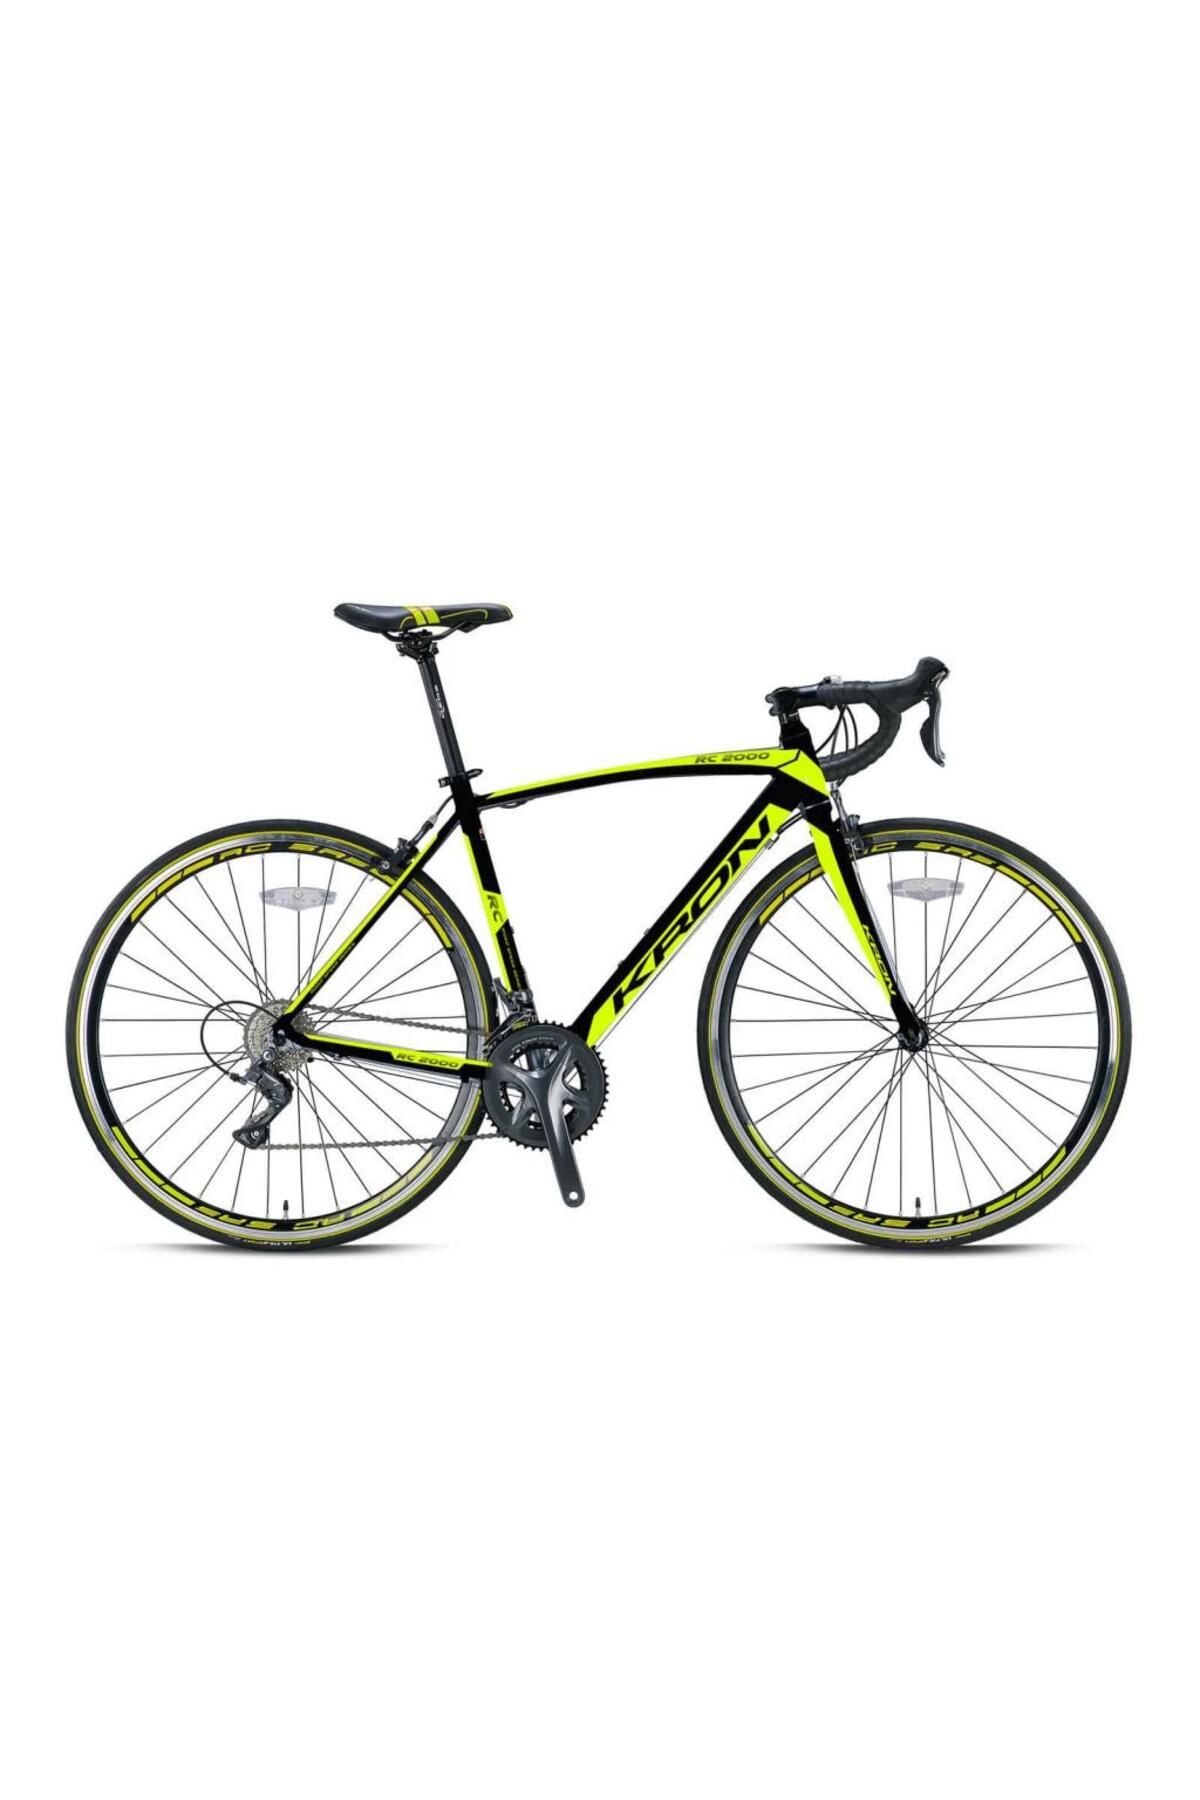 Kron Rc2000 Yol Yarış Bisikleti Siyah-neon Sarı 52 Cm 2021 Model